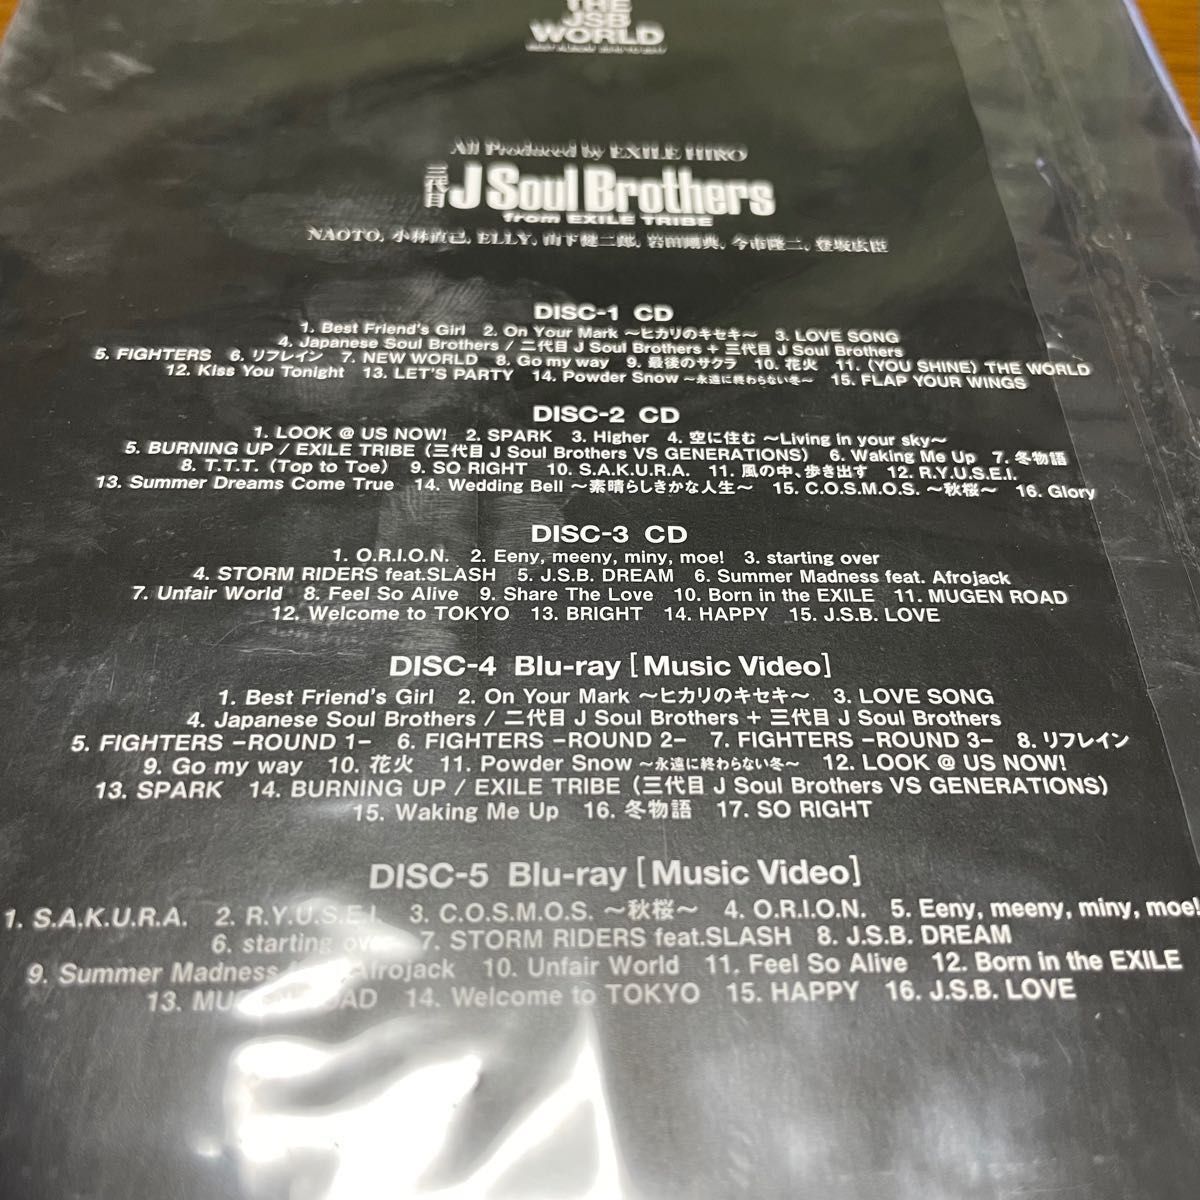 三代目J Soul Brothers THE JSB WORLD アルバム　3CD+2Blu-ray 初回盤（開封済・未再生）